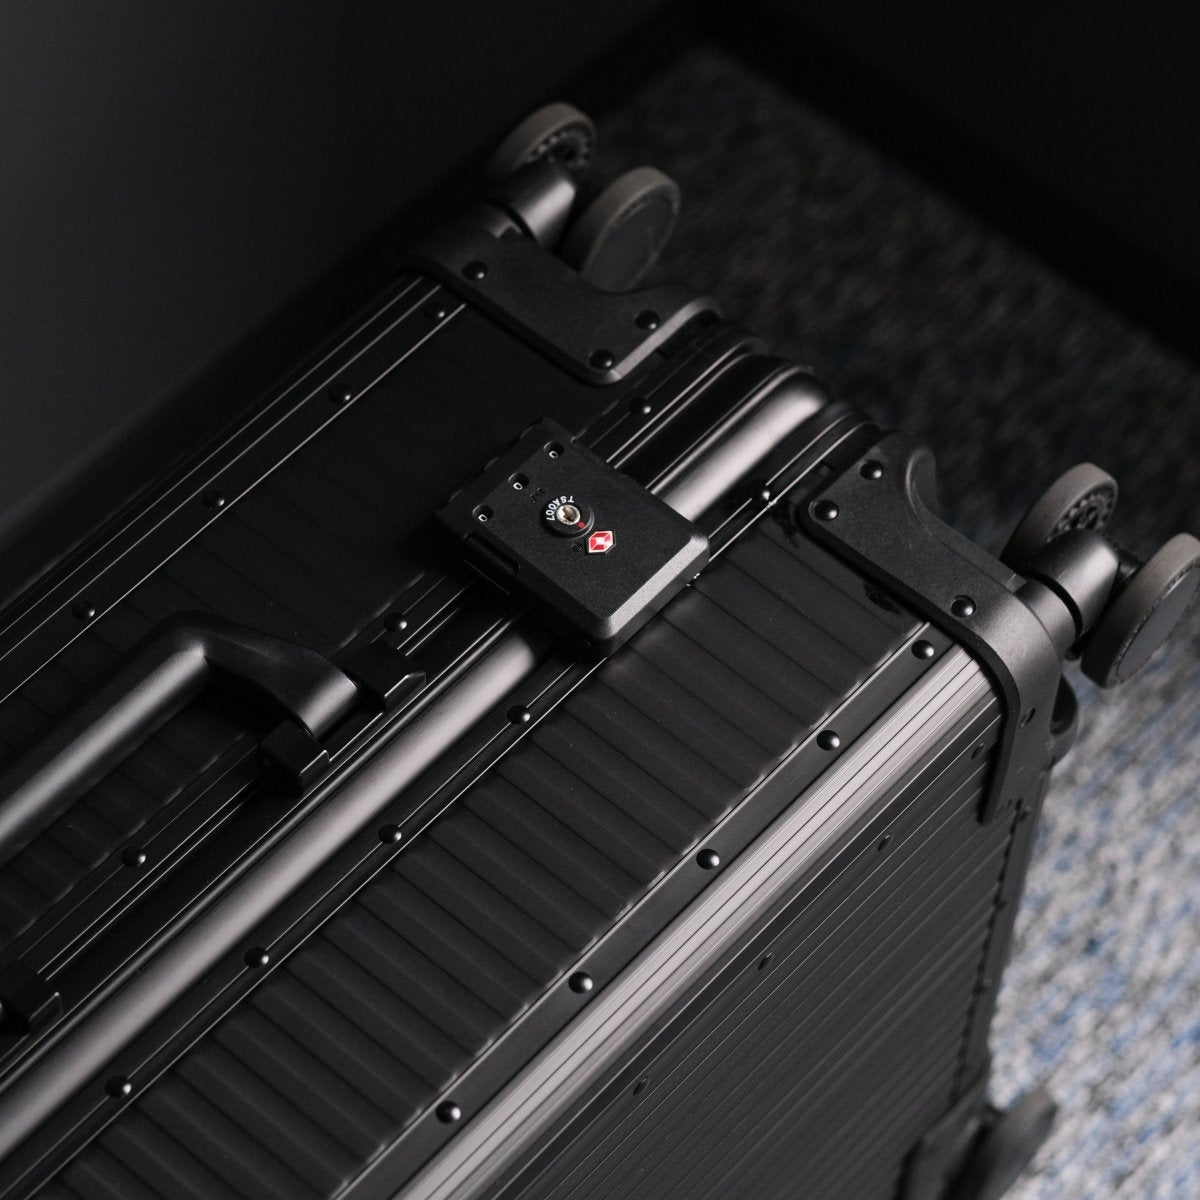 <受注生産 12月18日~ 順次発送>Stripe Aluminum Suitcase(Black) - aucentic